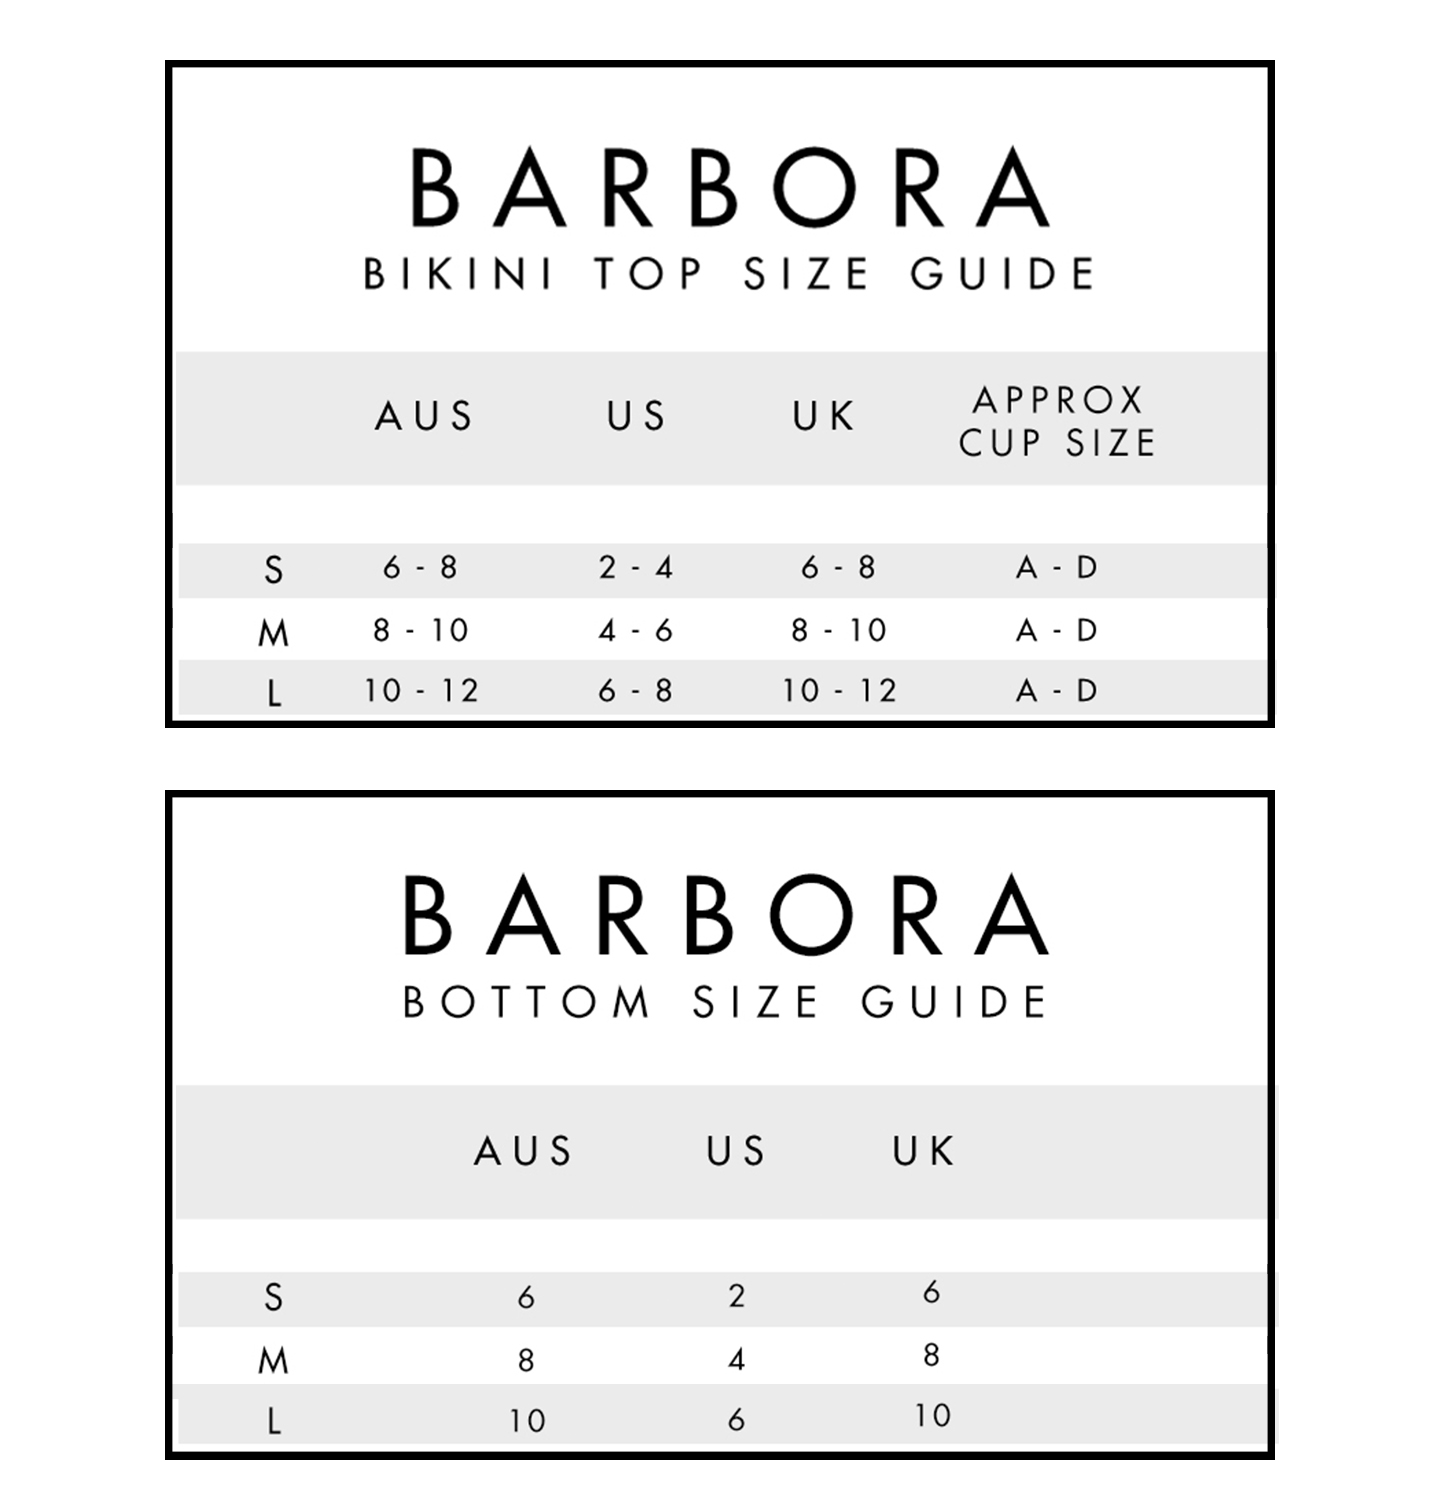 Size Guide - Barbora